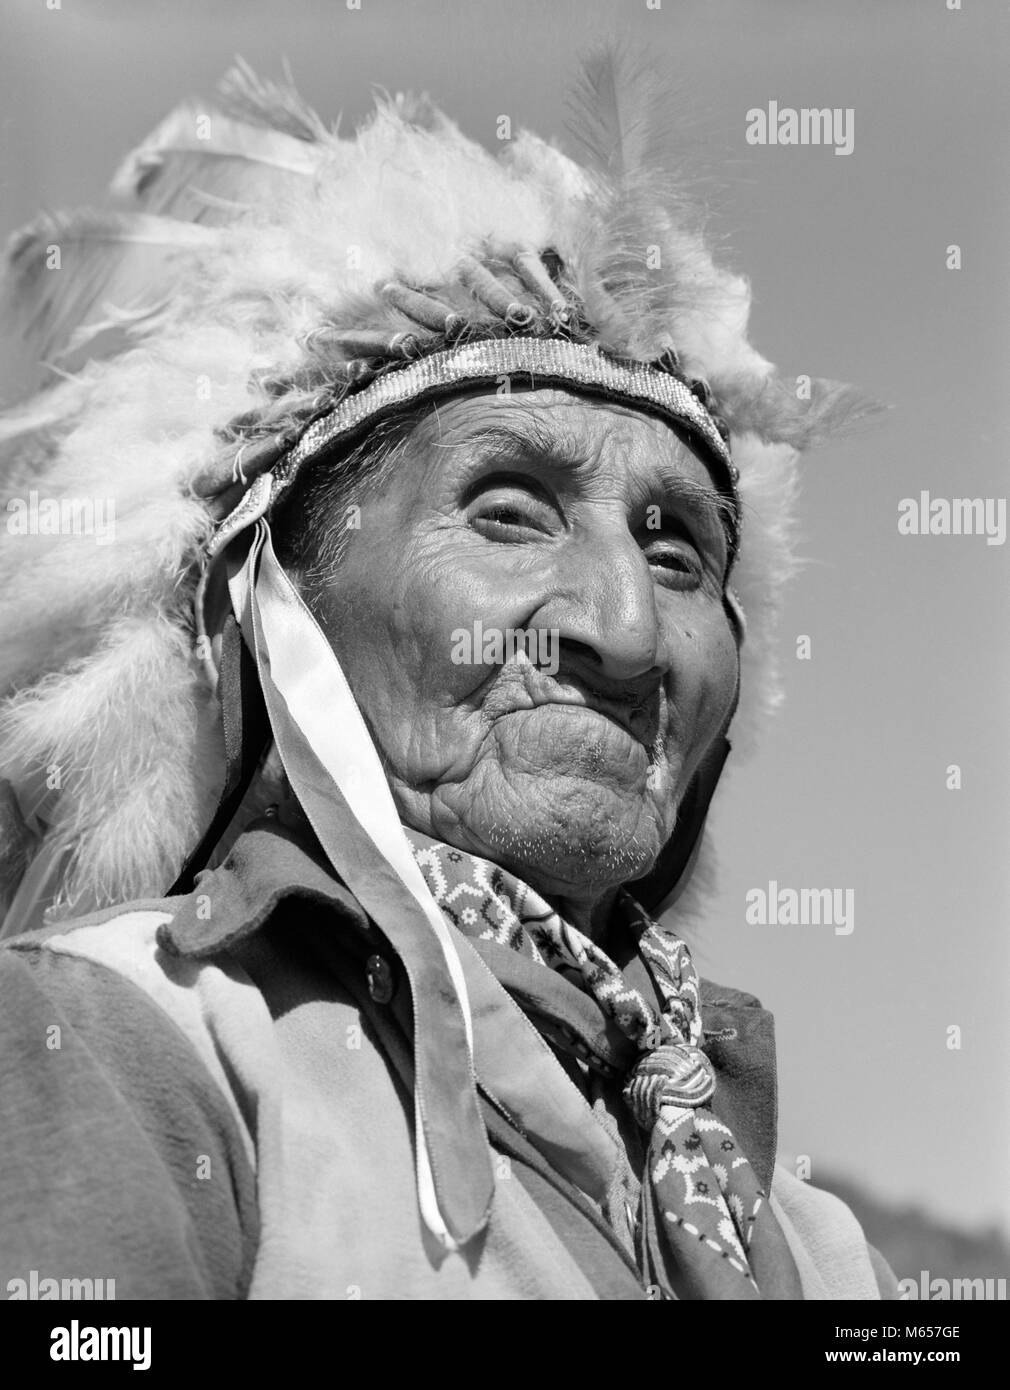 1950 1960 Retrato Native American indios Cherokee altos hombre que llevaba un tocado de plumas mirando a la cámara CAROLINA DEL NORTE EE.UU. - i1477 CRS001 HARS CRECIDOS, ESTADOS UNIDOS DE AMÉRICA PERSONAJE HOMBRE SENIOR ADULTO SENIOR NOSTALGIA NORTEAMÉRICA contacto ocular 60-65 años pueblo norteamericano, historia de cabeza y hombros fuerza aventura liderazgo orgullo jefe competente CAROLINA 70s adulto East Coast War Bonnet tocado nativos americanos varones conflictivos NC North Carolina B&W un pañuelo blanco y negro DESAPROBANDO CHEROKEE mirando a la cámara indígena NOBLE ANTIGUO PERSONAS GRAVES Foto de stock